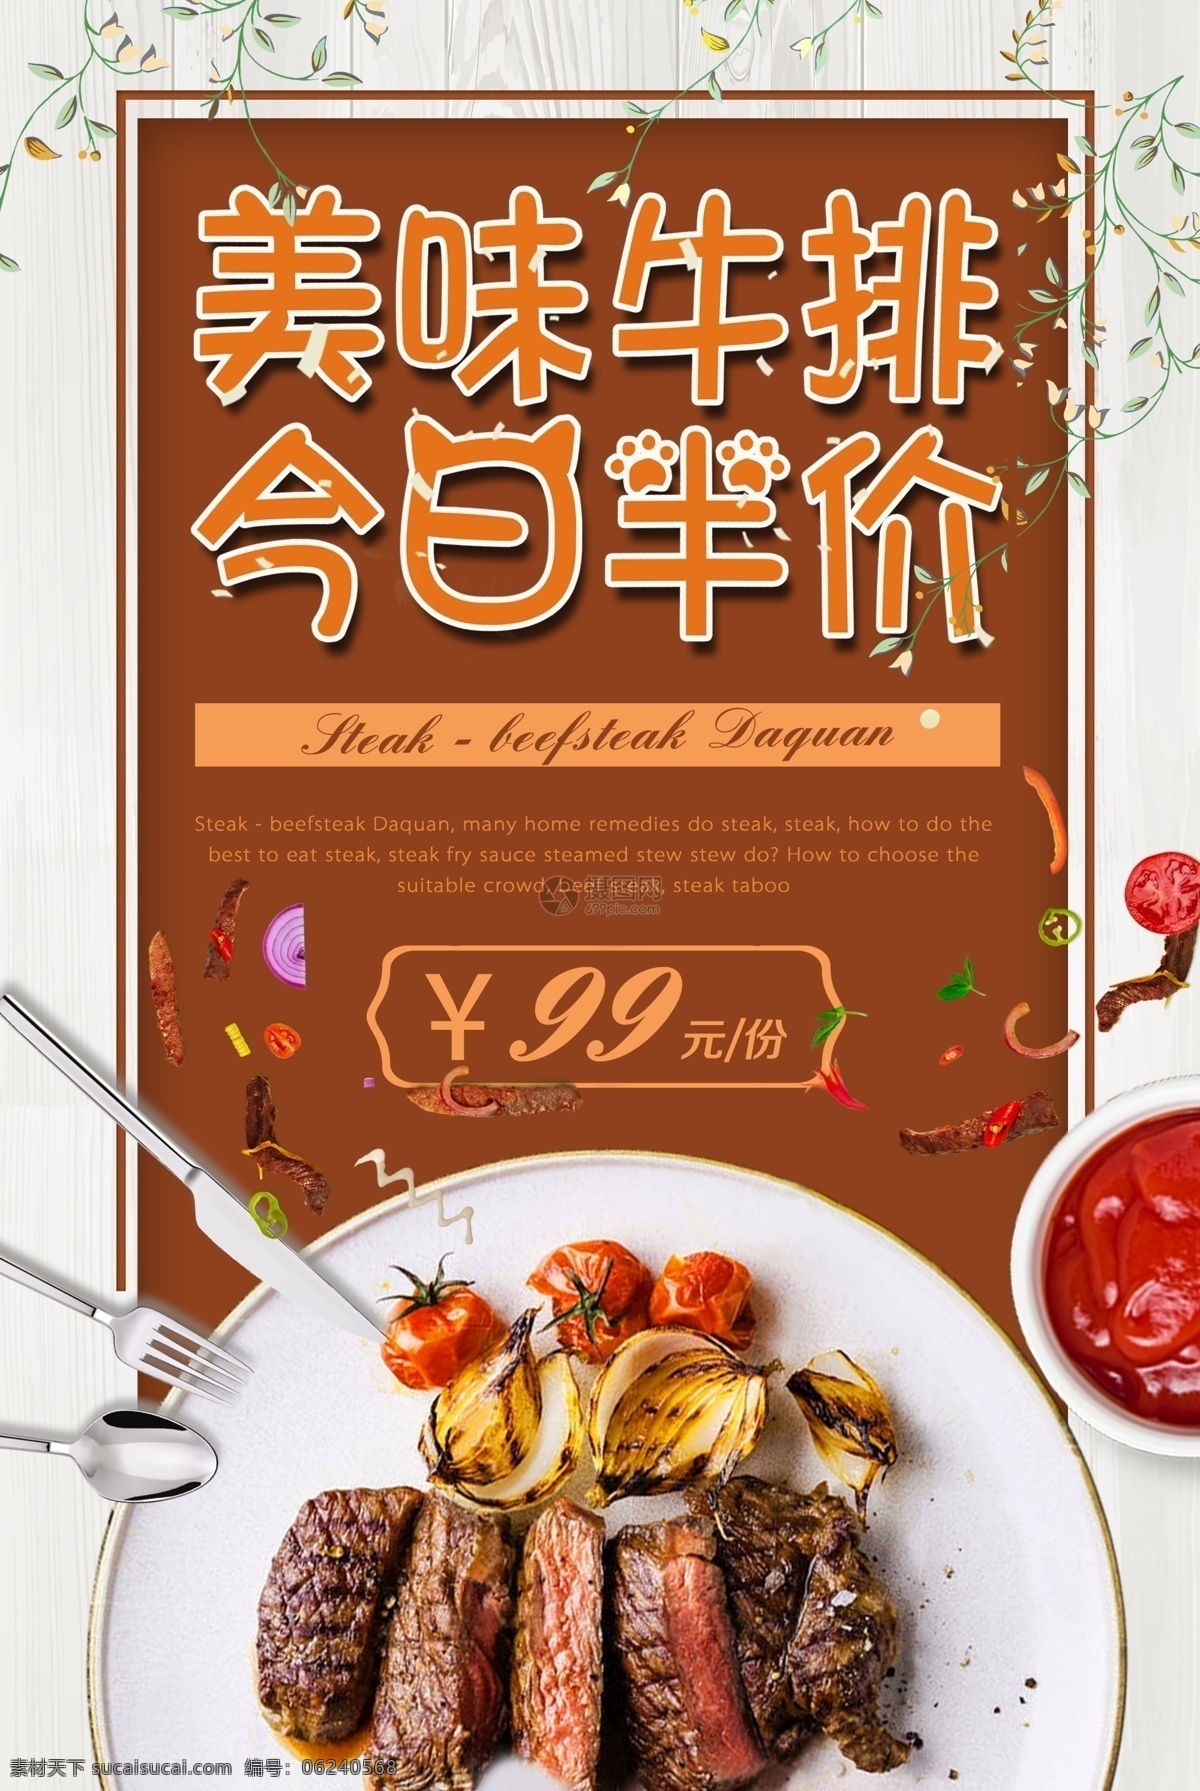 美味 牛排 美食 美味牛排 今日半价 西餐 西餐厅 打折 食物 美食宣传 海报